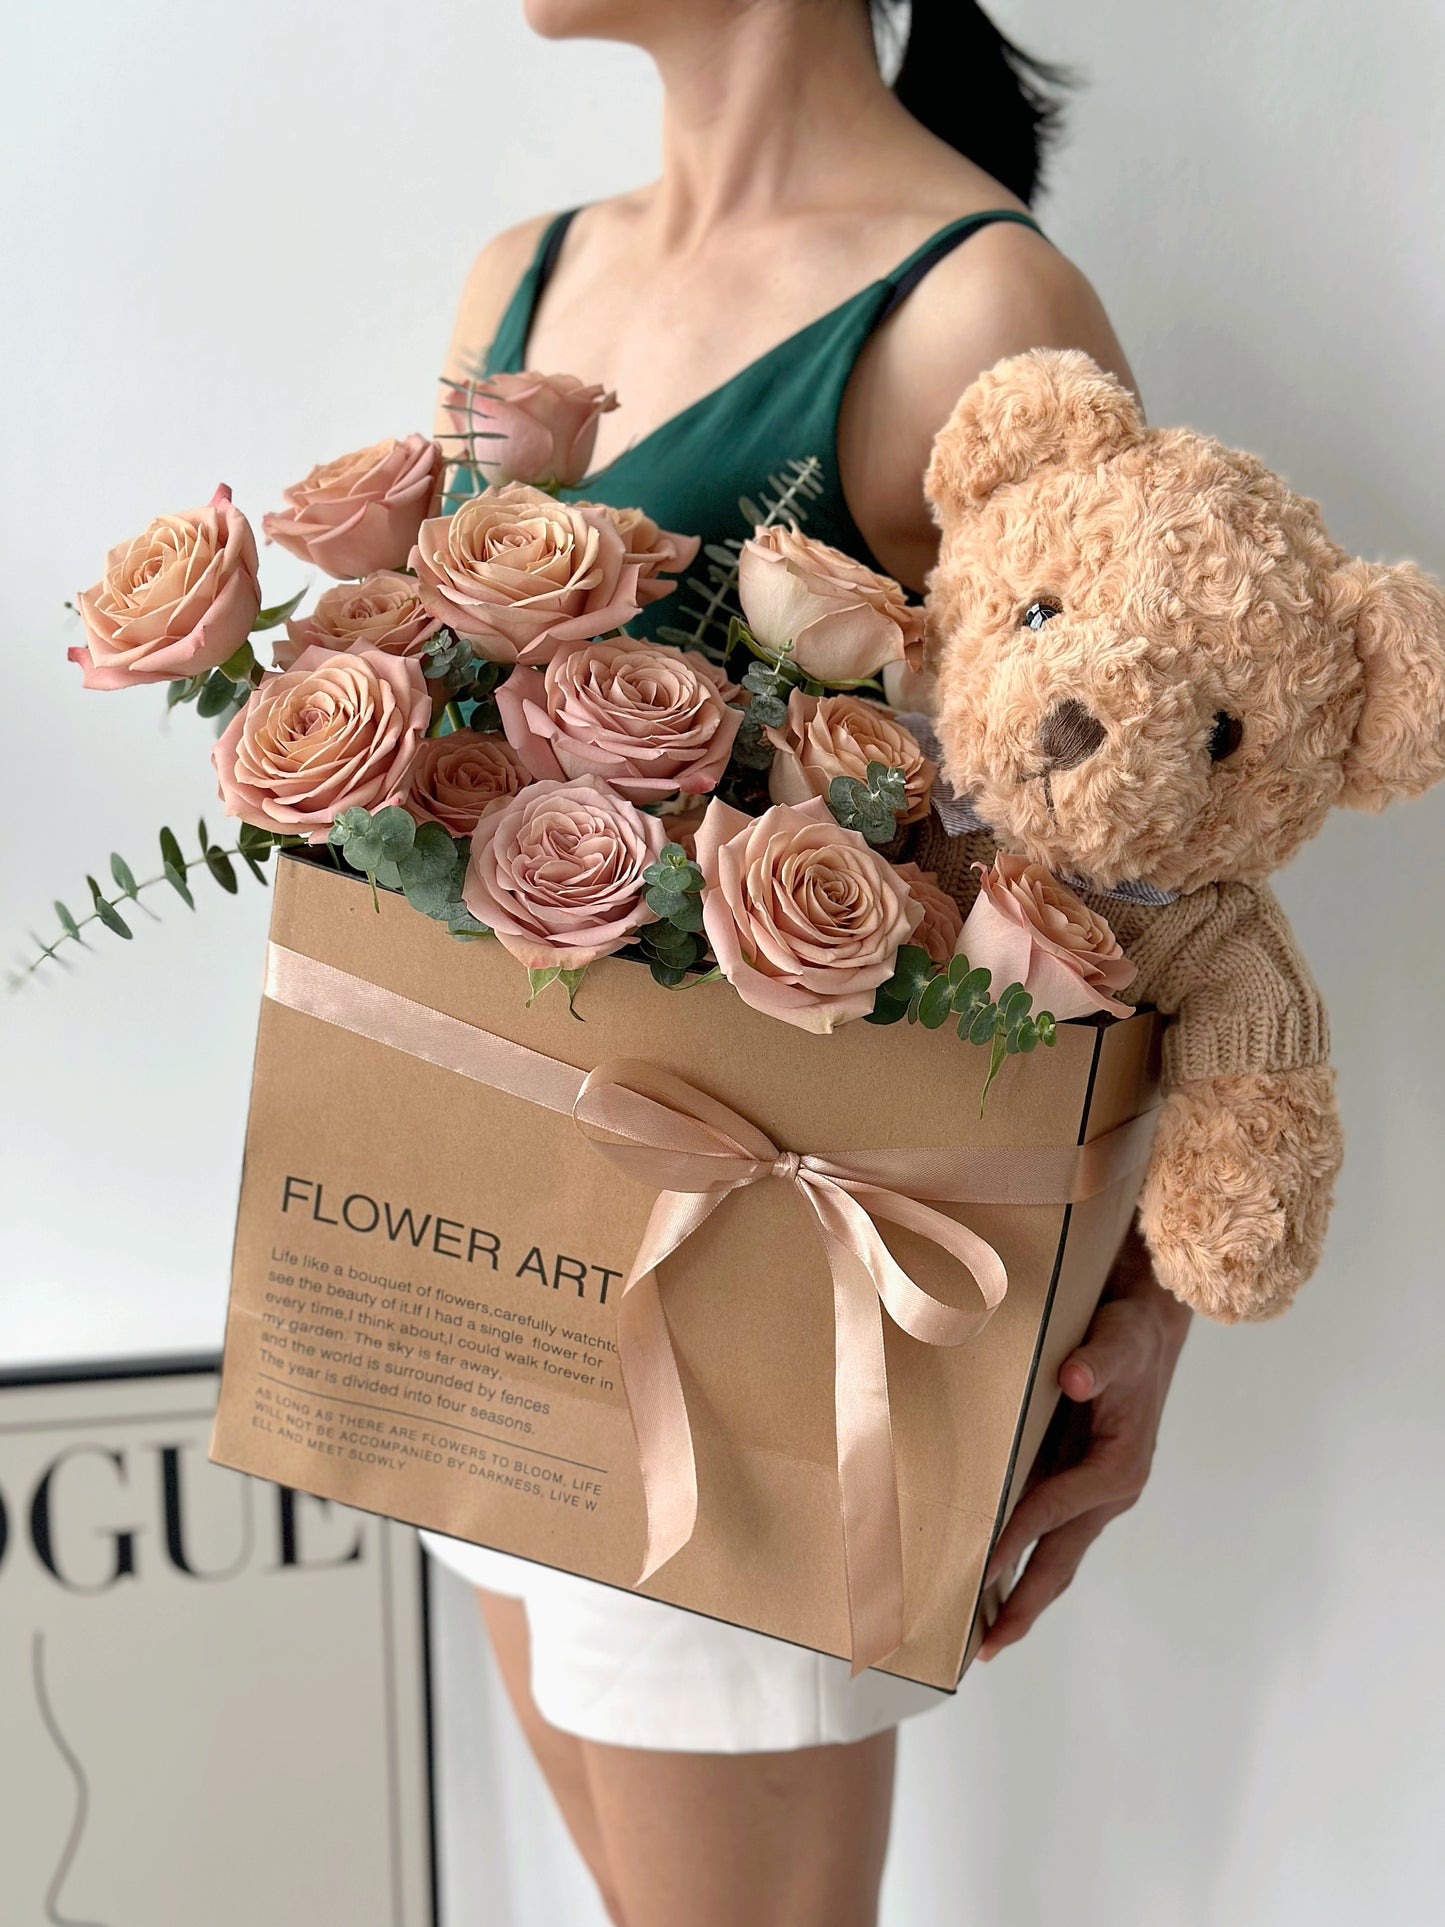 Bear in the flower bag